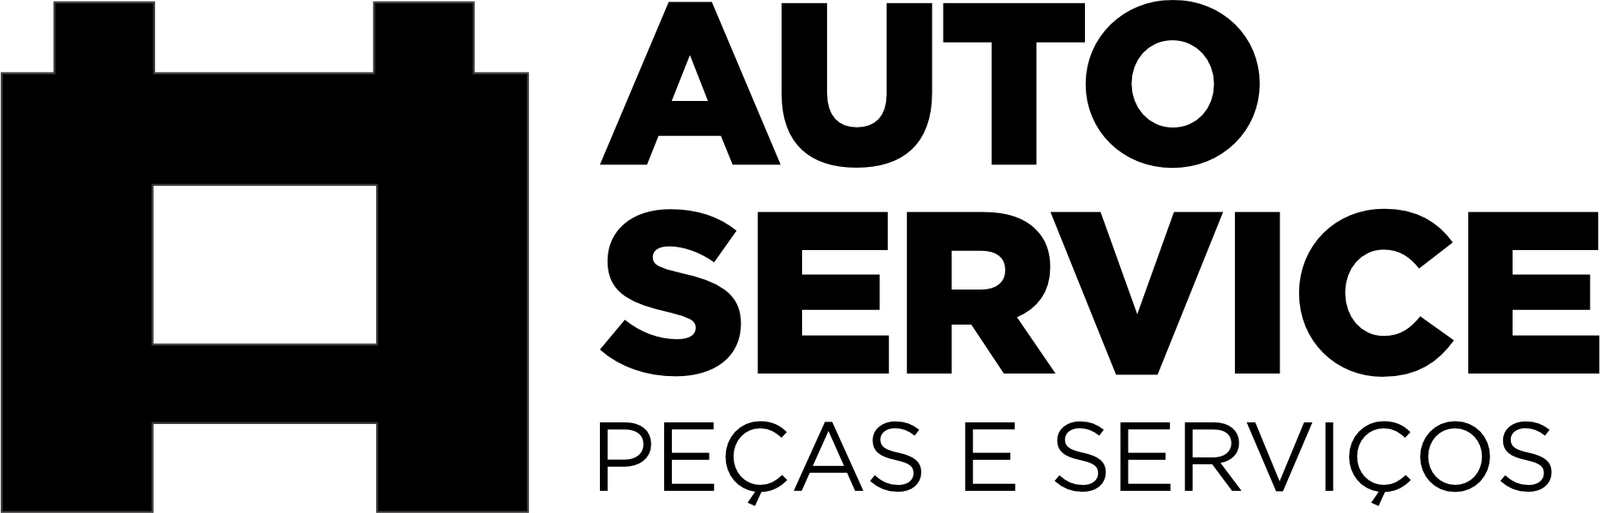 Logotipo Autoservice peças e serviços